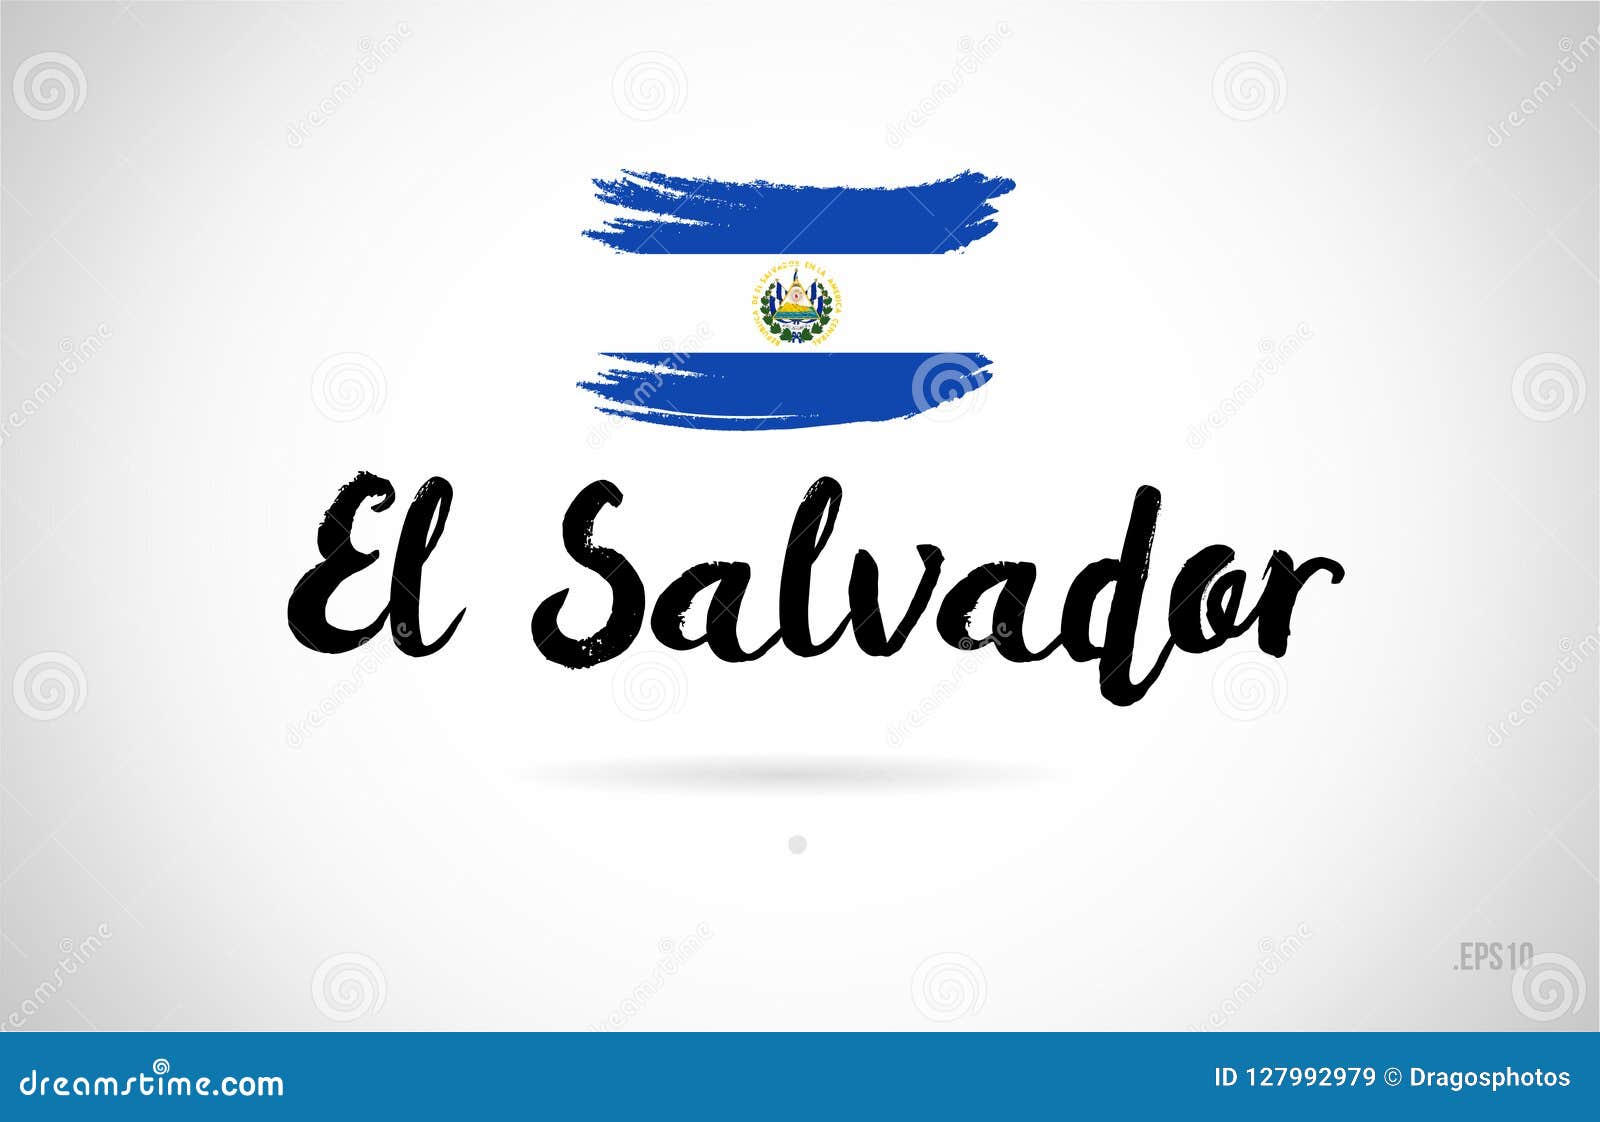 El Salvador Logo Stock Illustrations – 253 El Salvador Logo Stock  Illustrations, Vectors & Clipart - Dreamstime